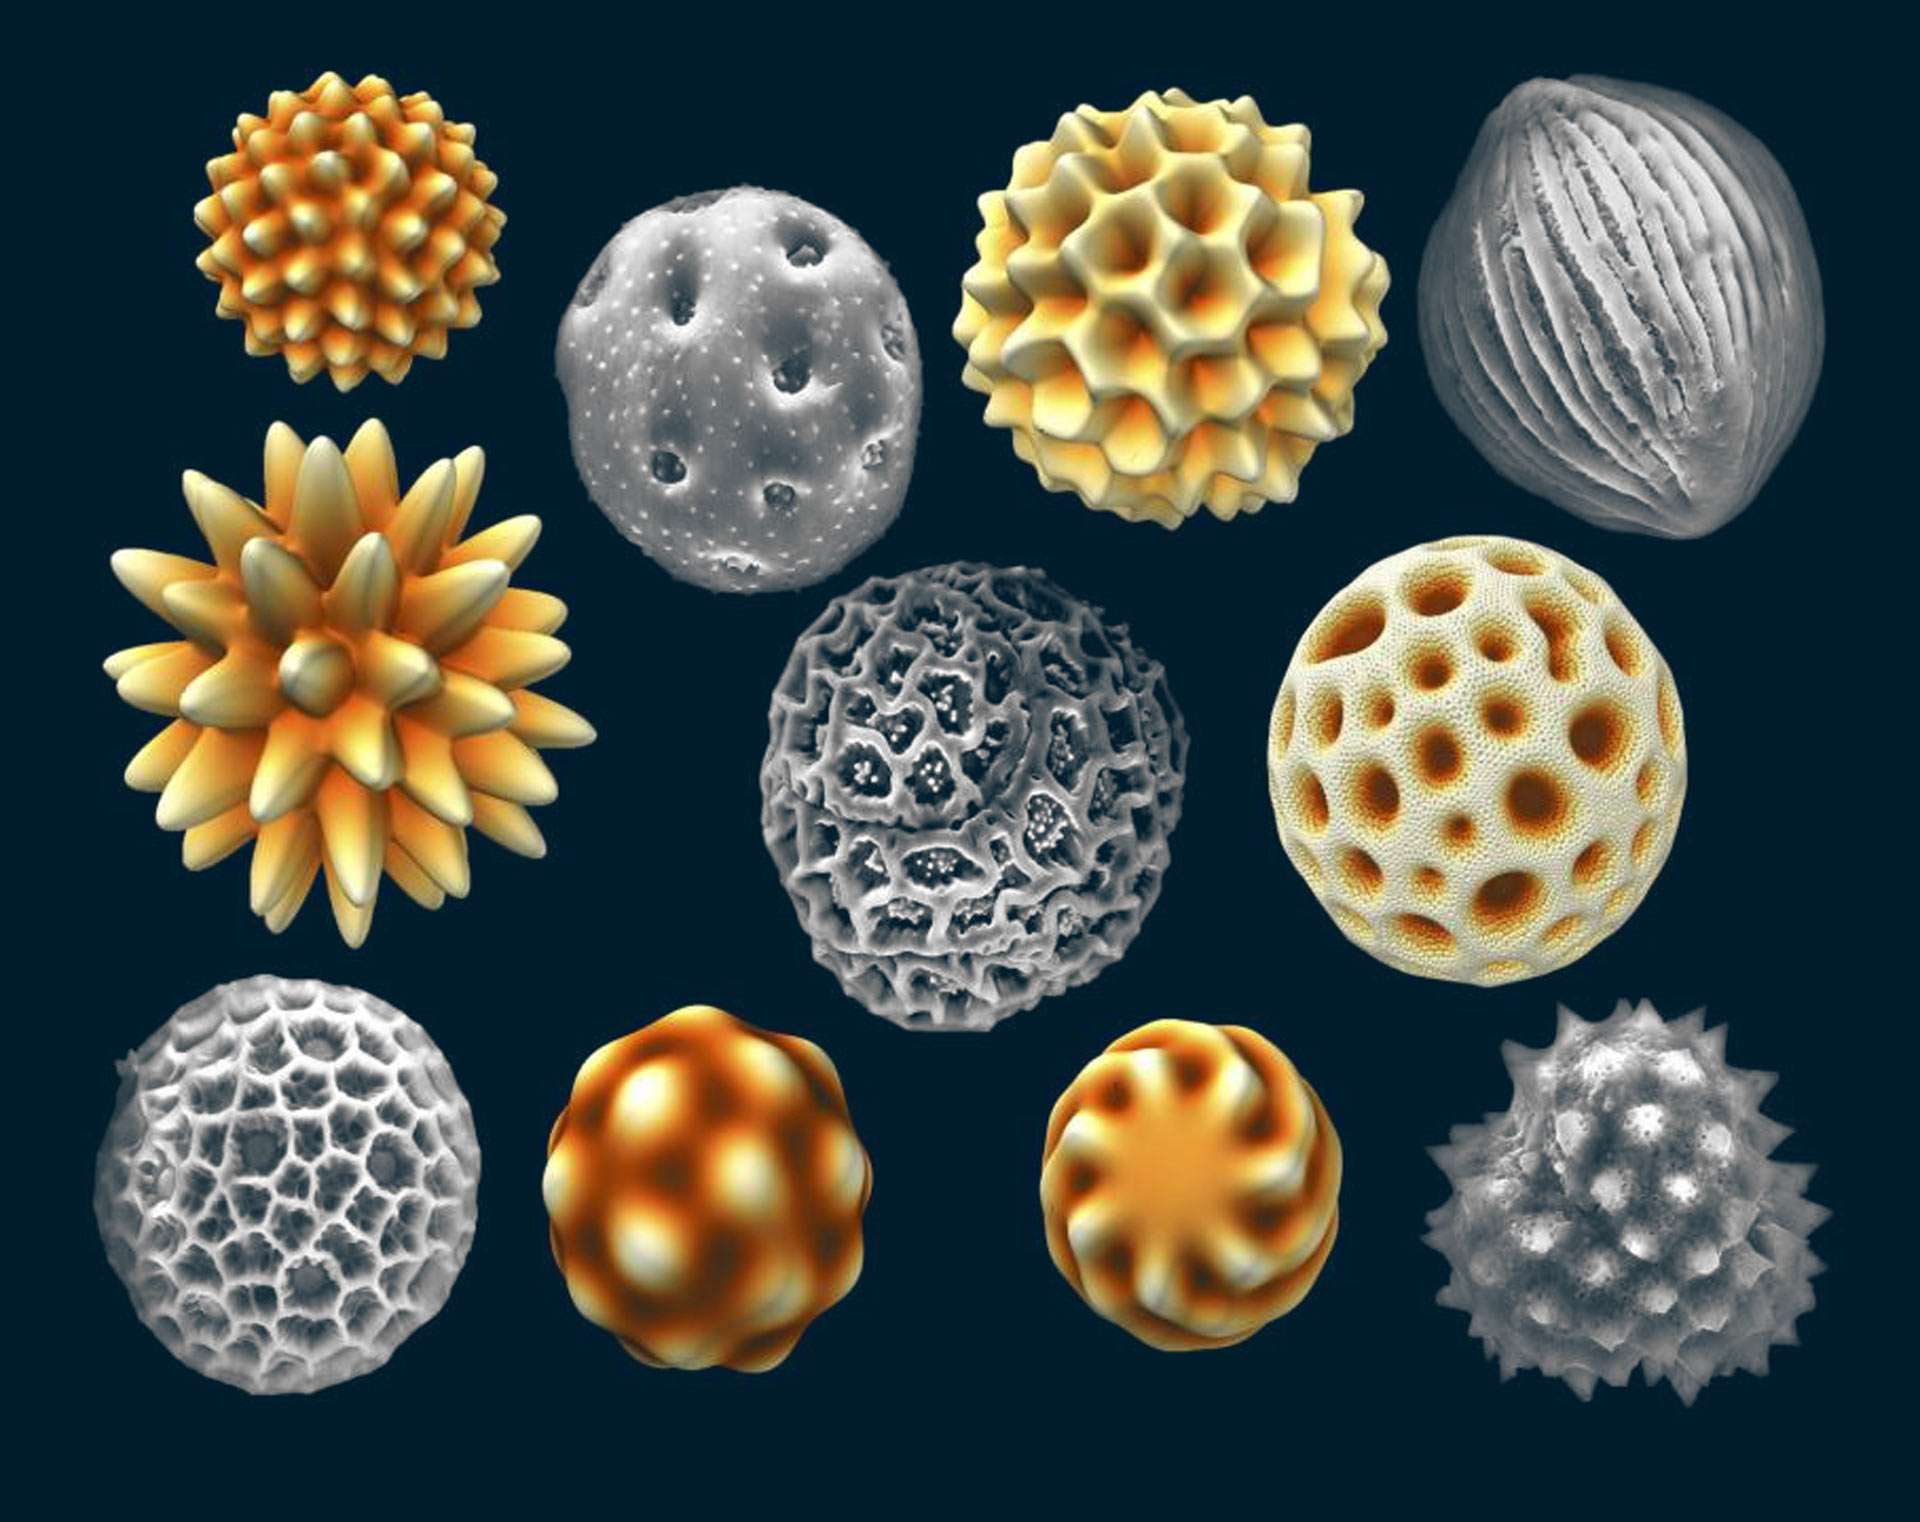 Nature Favors Production of Asymmetrical Pollen Grains